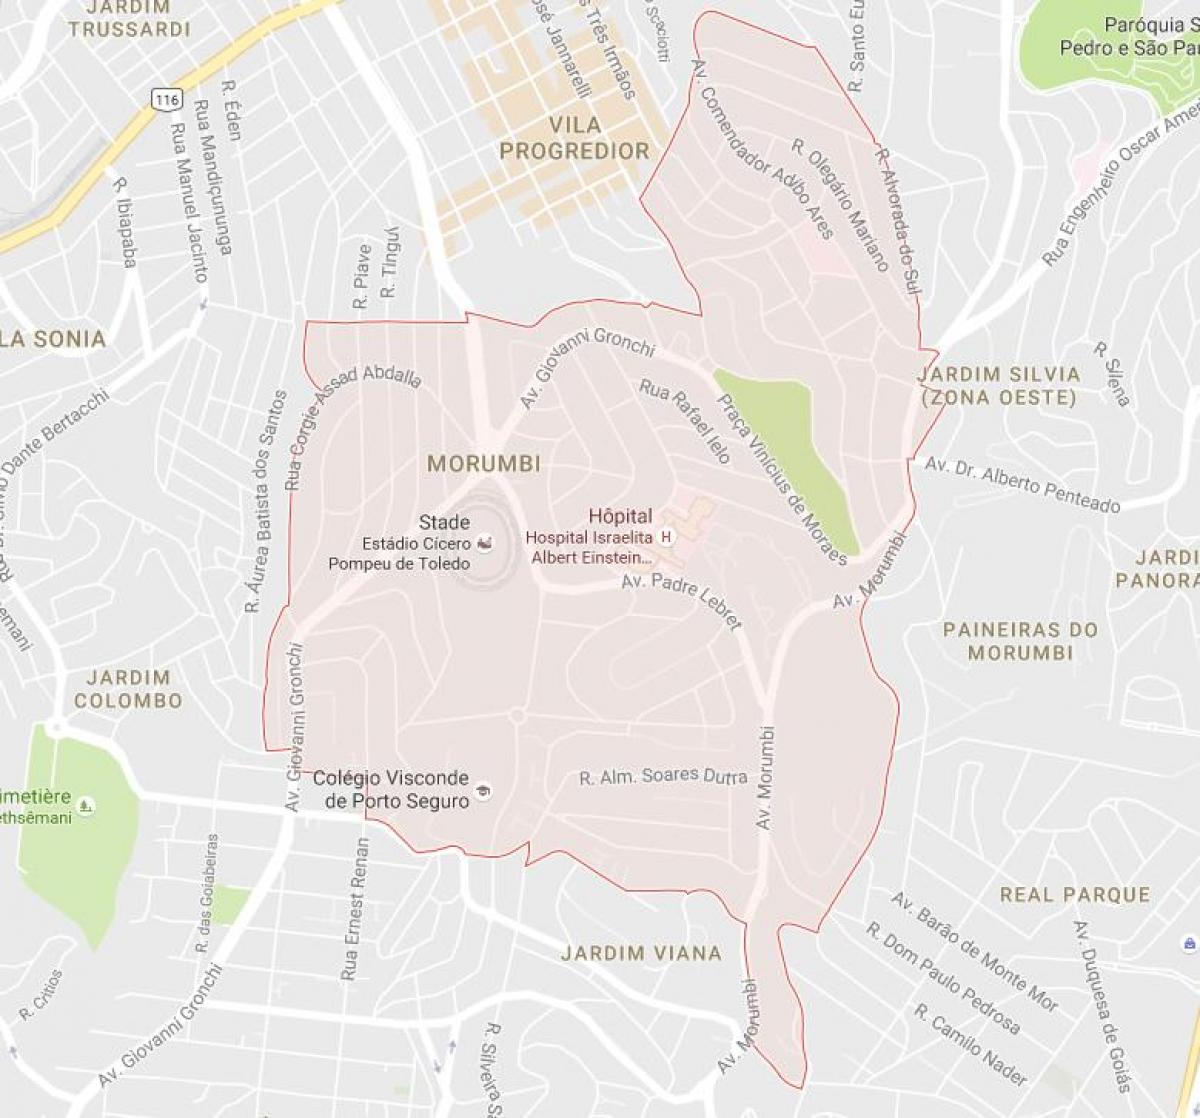 Mapa okolí morumbi v São Paulo